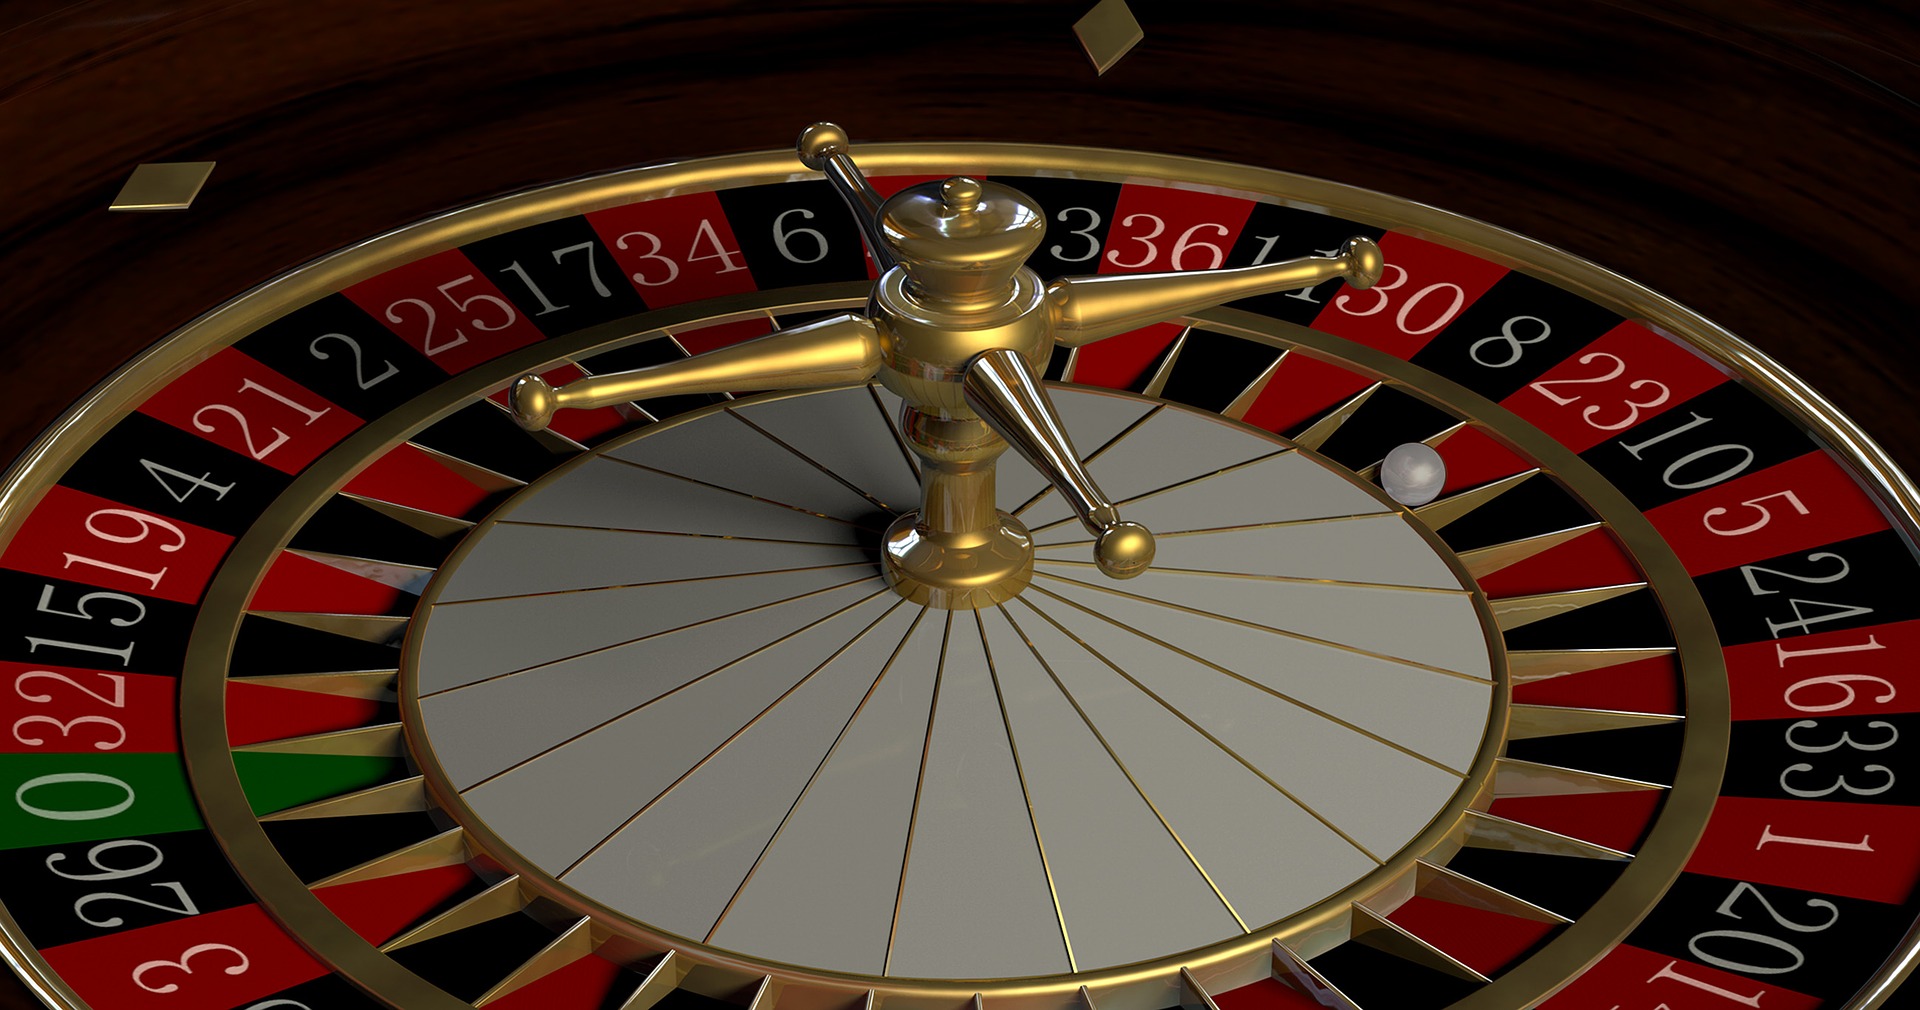 Memahami Aturan Permainan Judi Roulette Sebelum Bertaruh